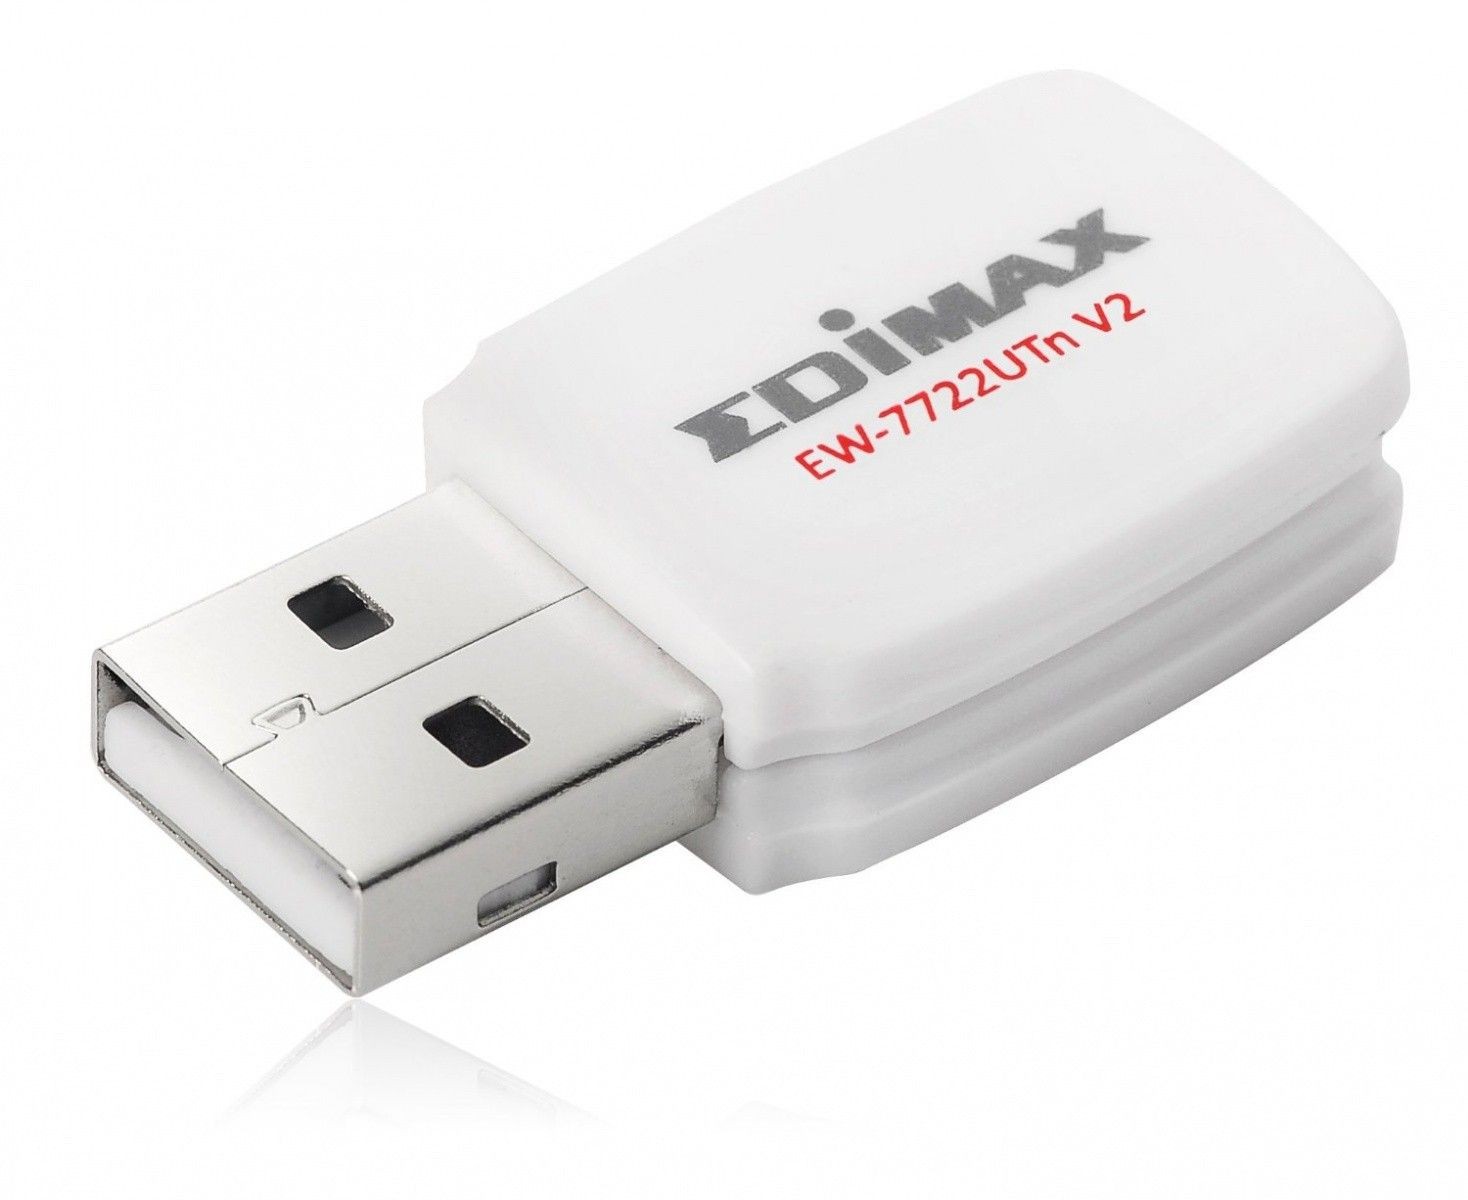 Edimax EW-7722UTn V2 Wireless 802.11b/g/n 300Mbps USB 2.0 mini-size adapter, WPS button, 2T2R